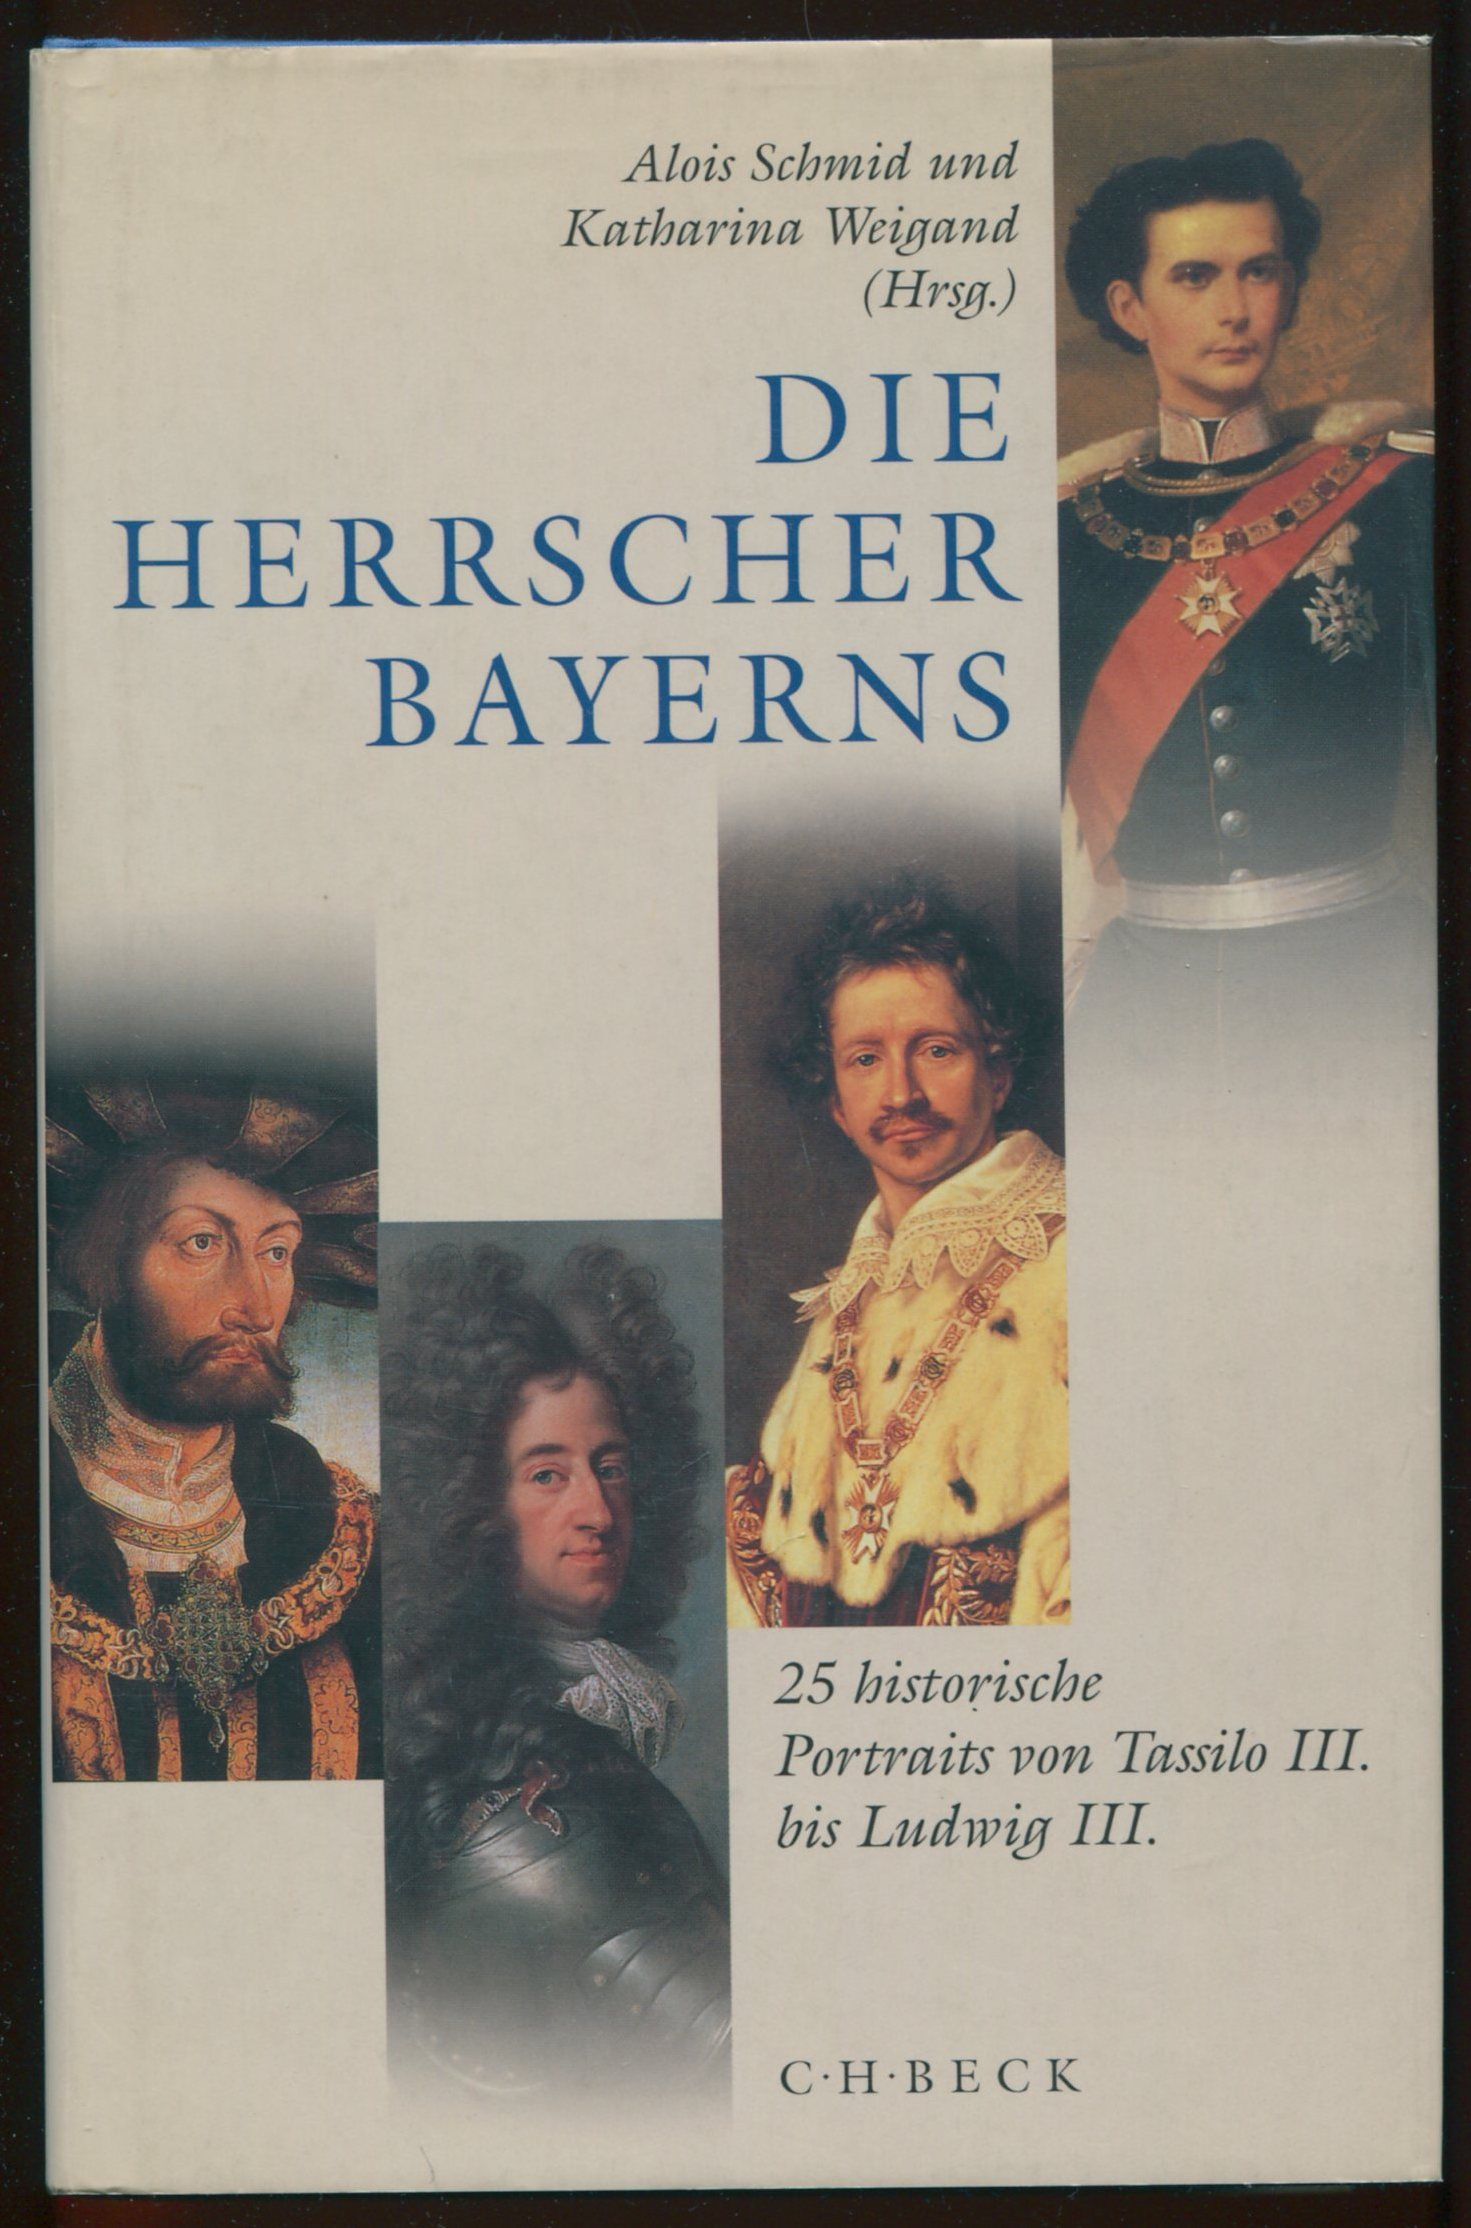 Die herrscher bayerns - 25 historische Portraits von Tassilo III bis Ludwig III - Alois Schmid, Katharina Weigand (hrsg.)